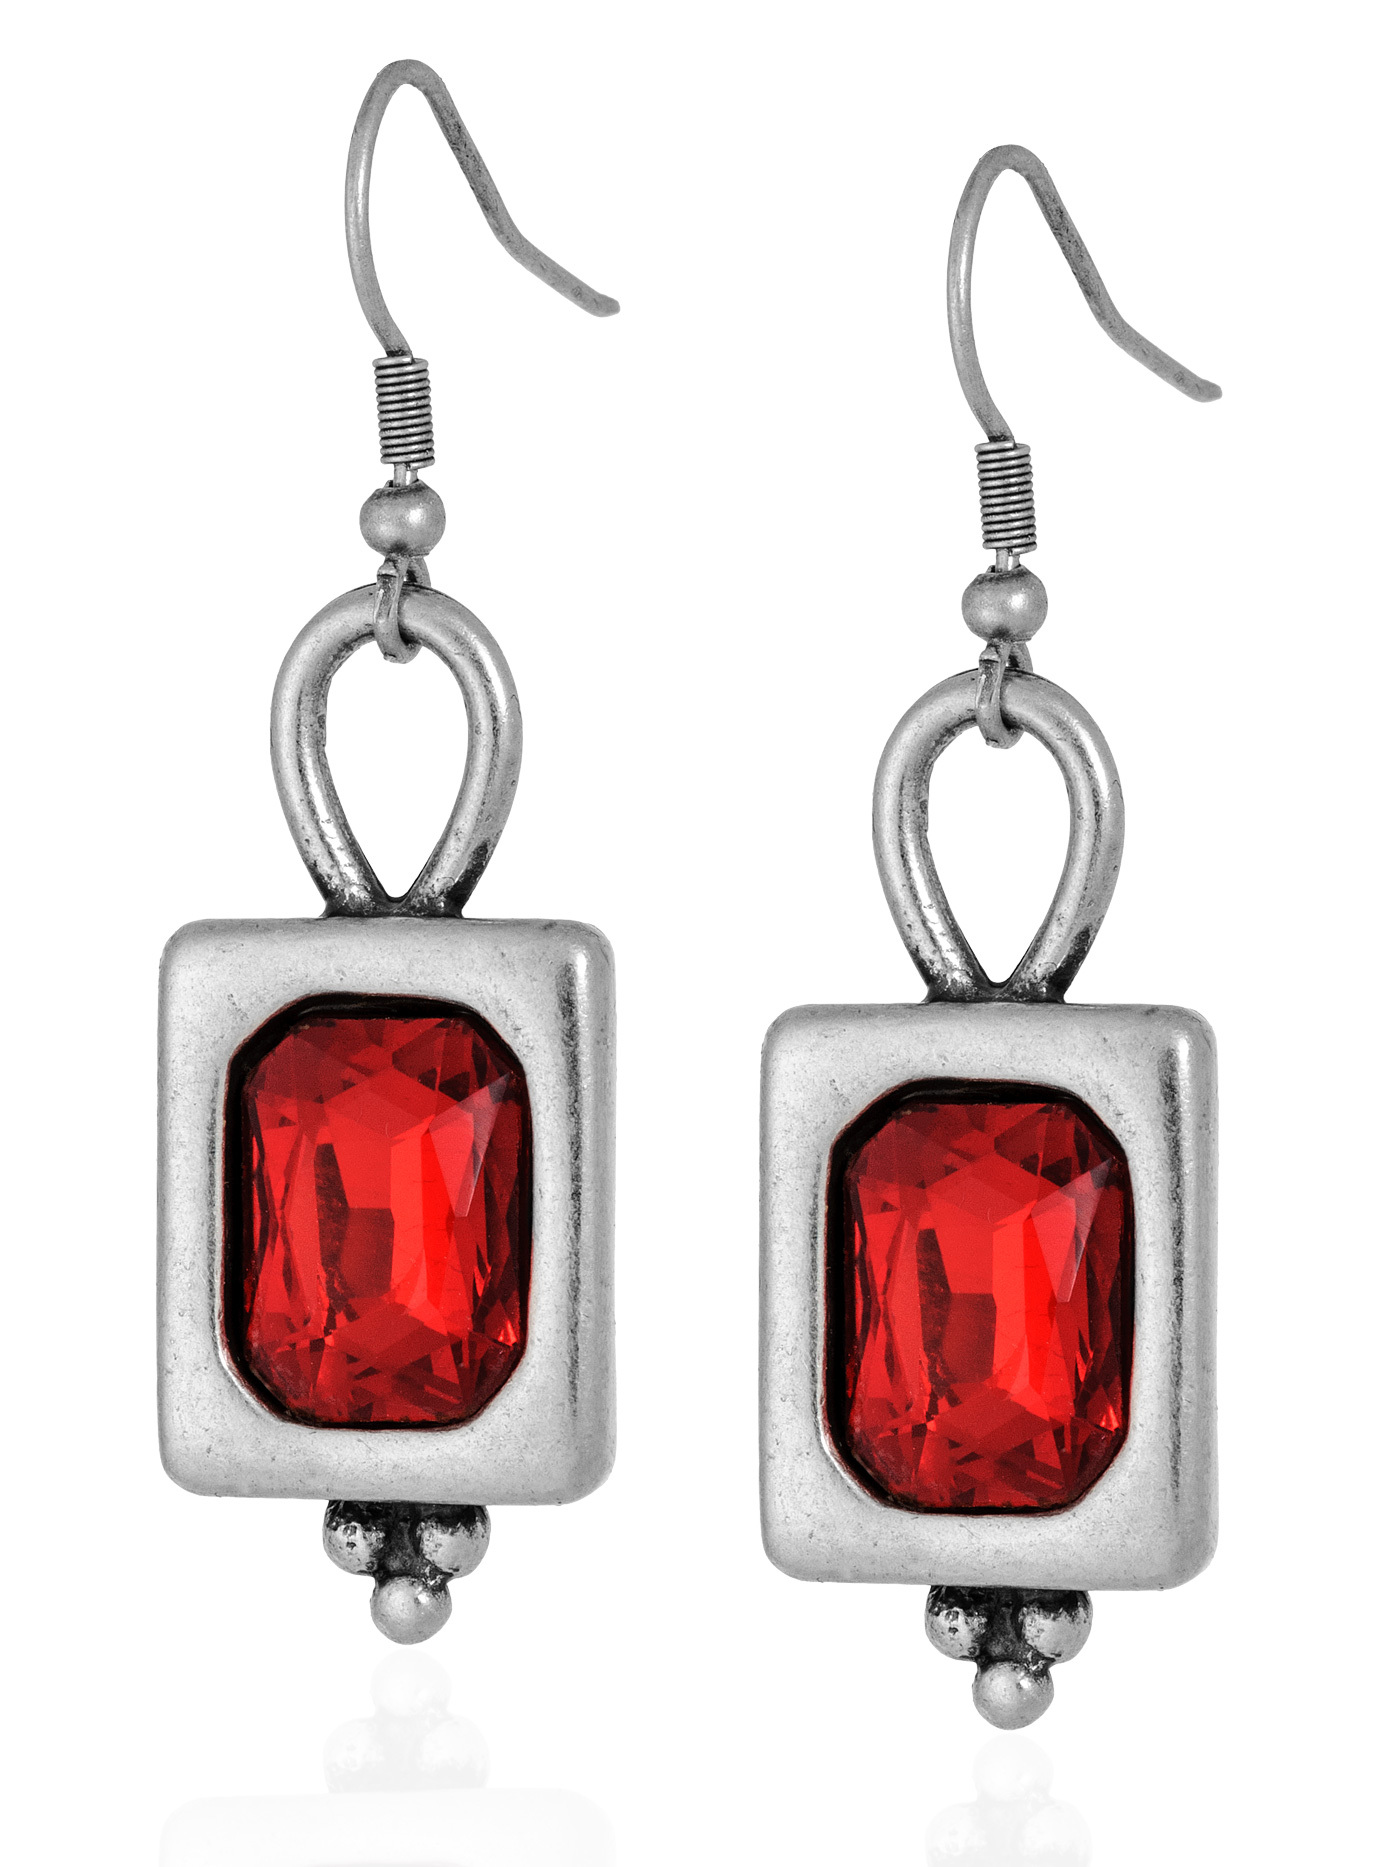 Красные серьги с кристаллами - артикул 421115100 - купить в интернет-магазине ювелирной бижутерии Lattrice